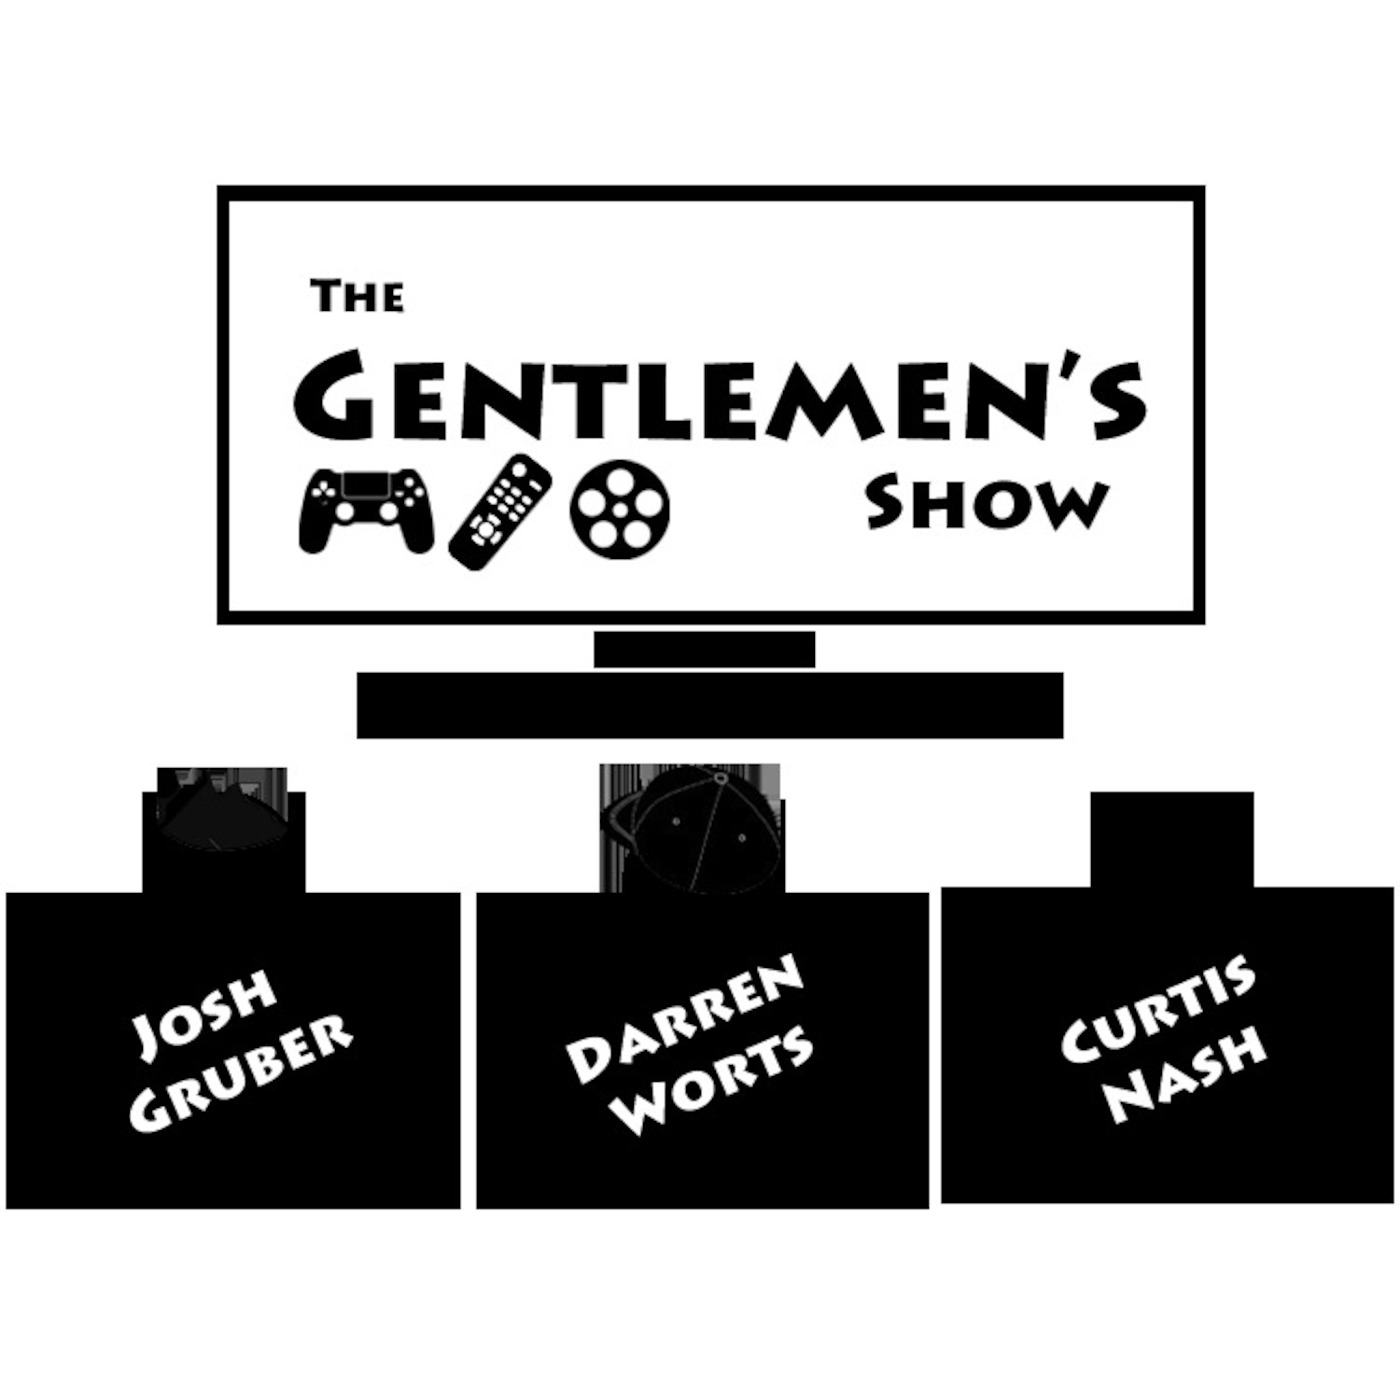 The Gentlemen's Show